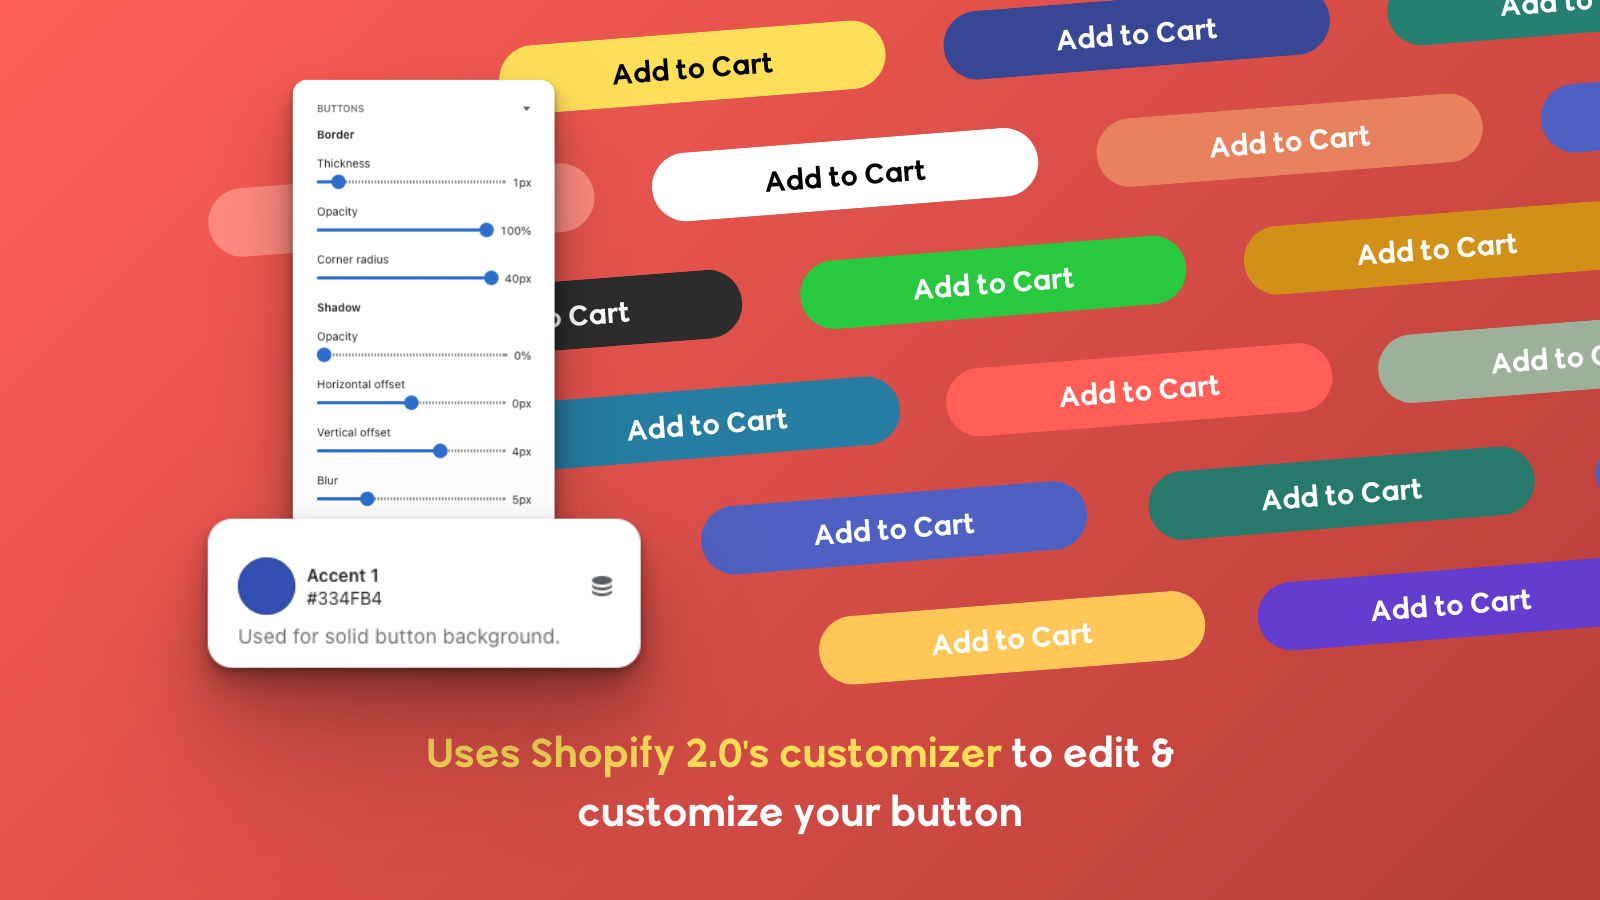 Utilise le personnalisateur 2.0 de Shopify pour éditer et personnaliser le bouton ATC